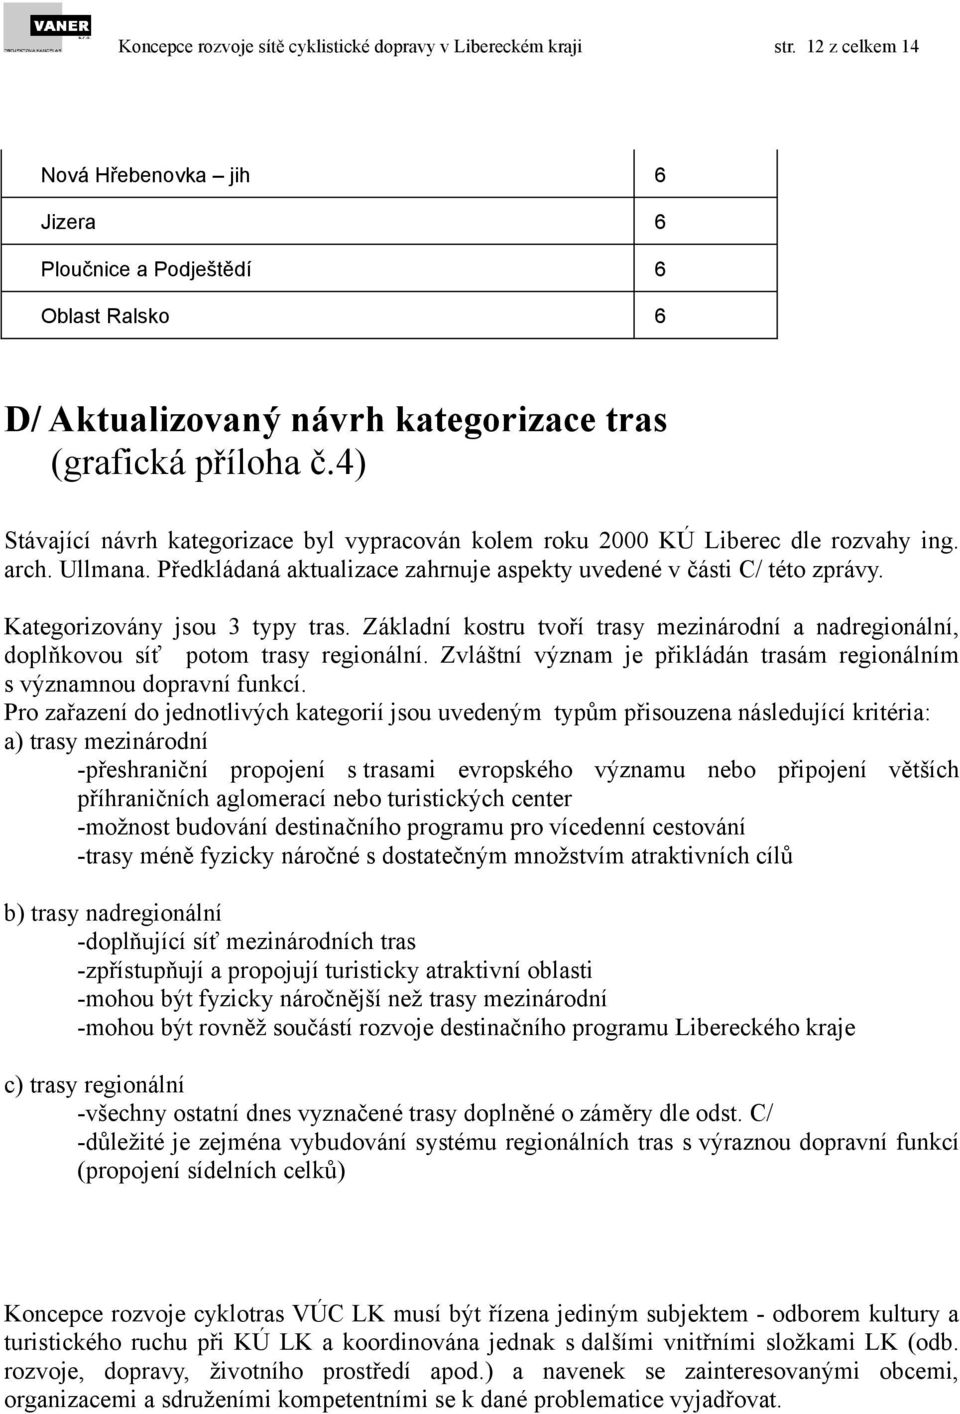 4) Stávající návrh kategorizace byl vypracován kolem roku 2000 KÚ Liberec dle rozvahy ing. arch. Ullmana. Předkládaná aktualizace zahrnuje aspekty uvedené v části C/ této zprávy.